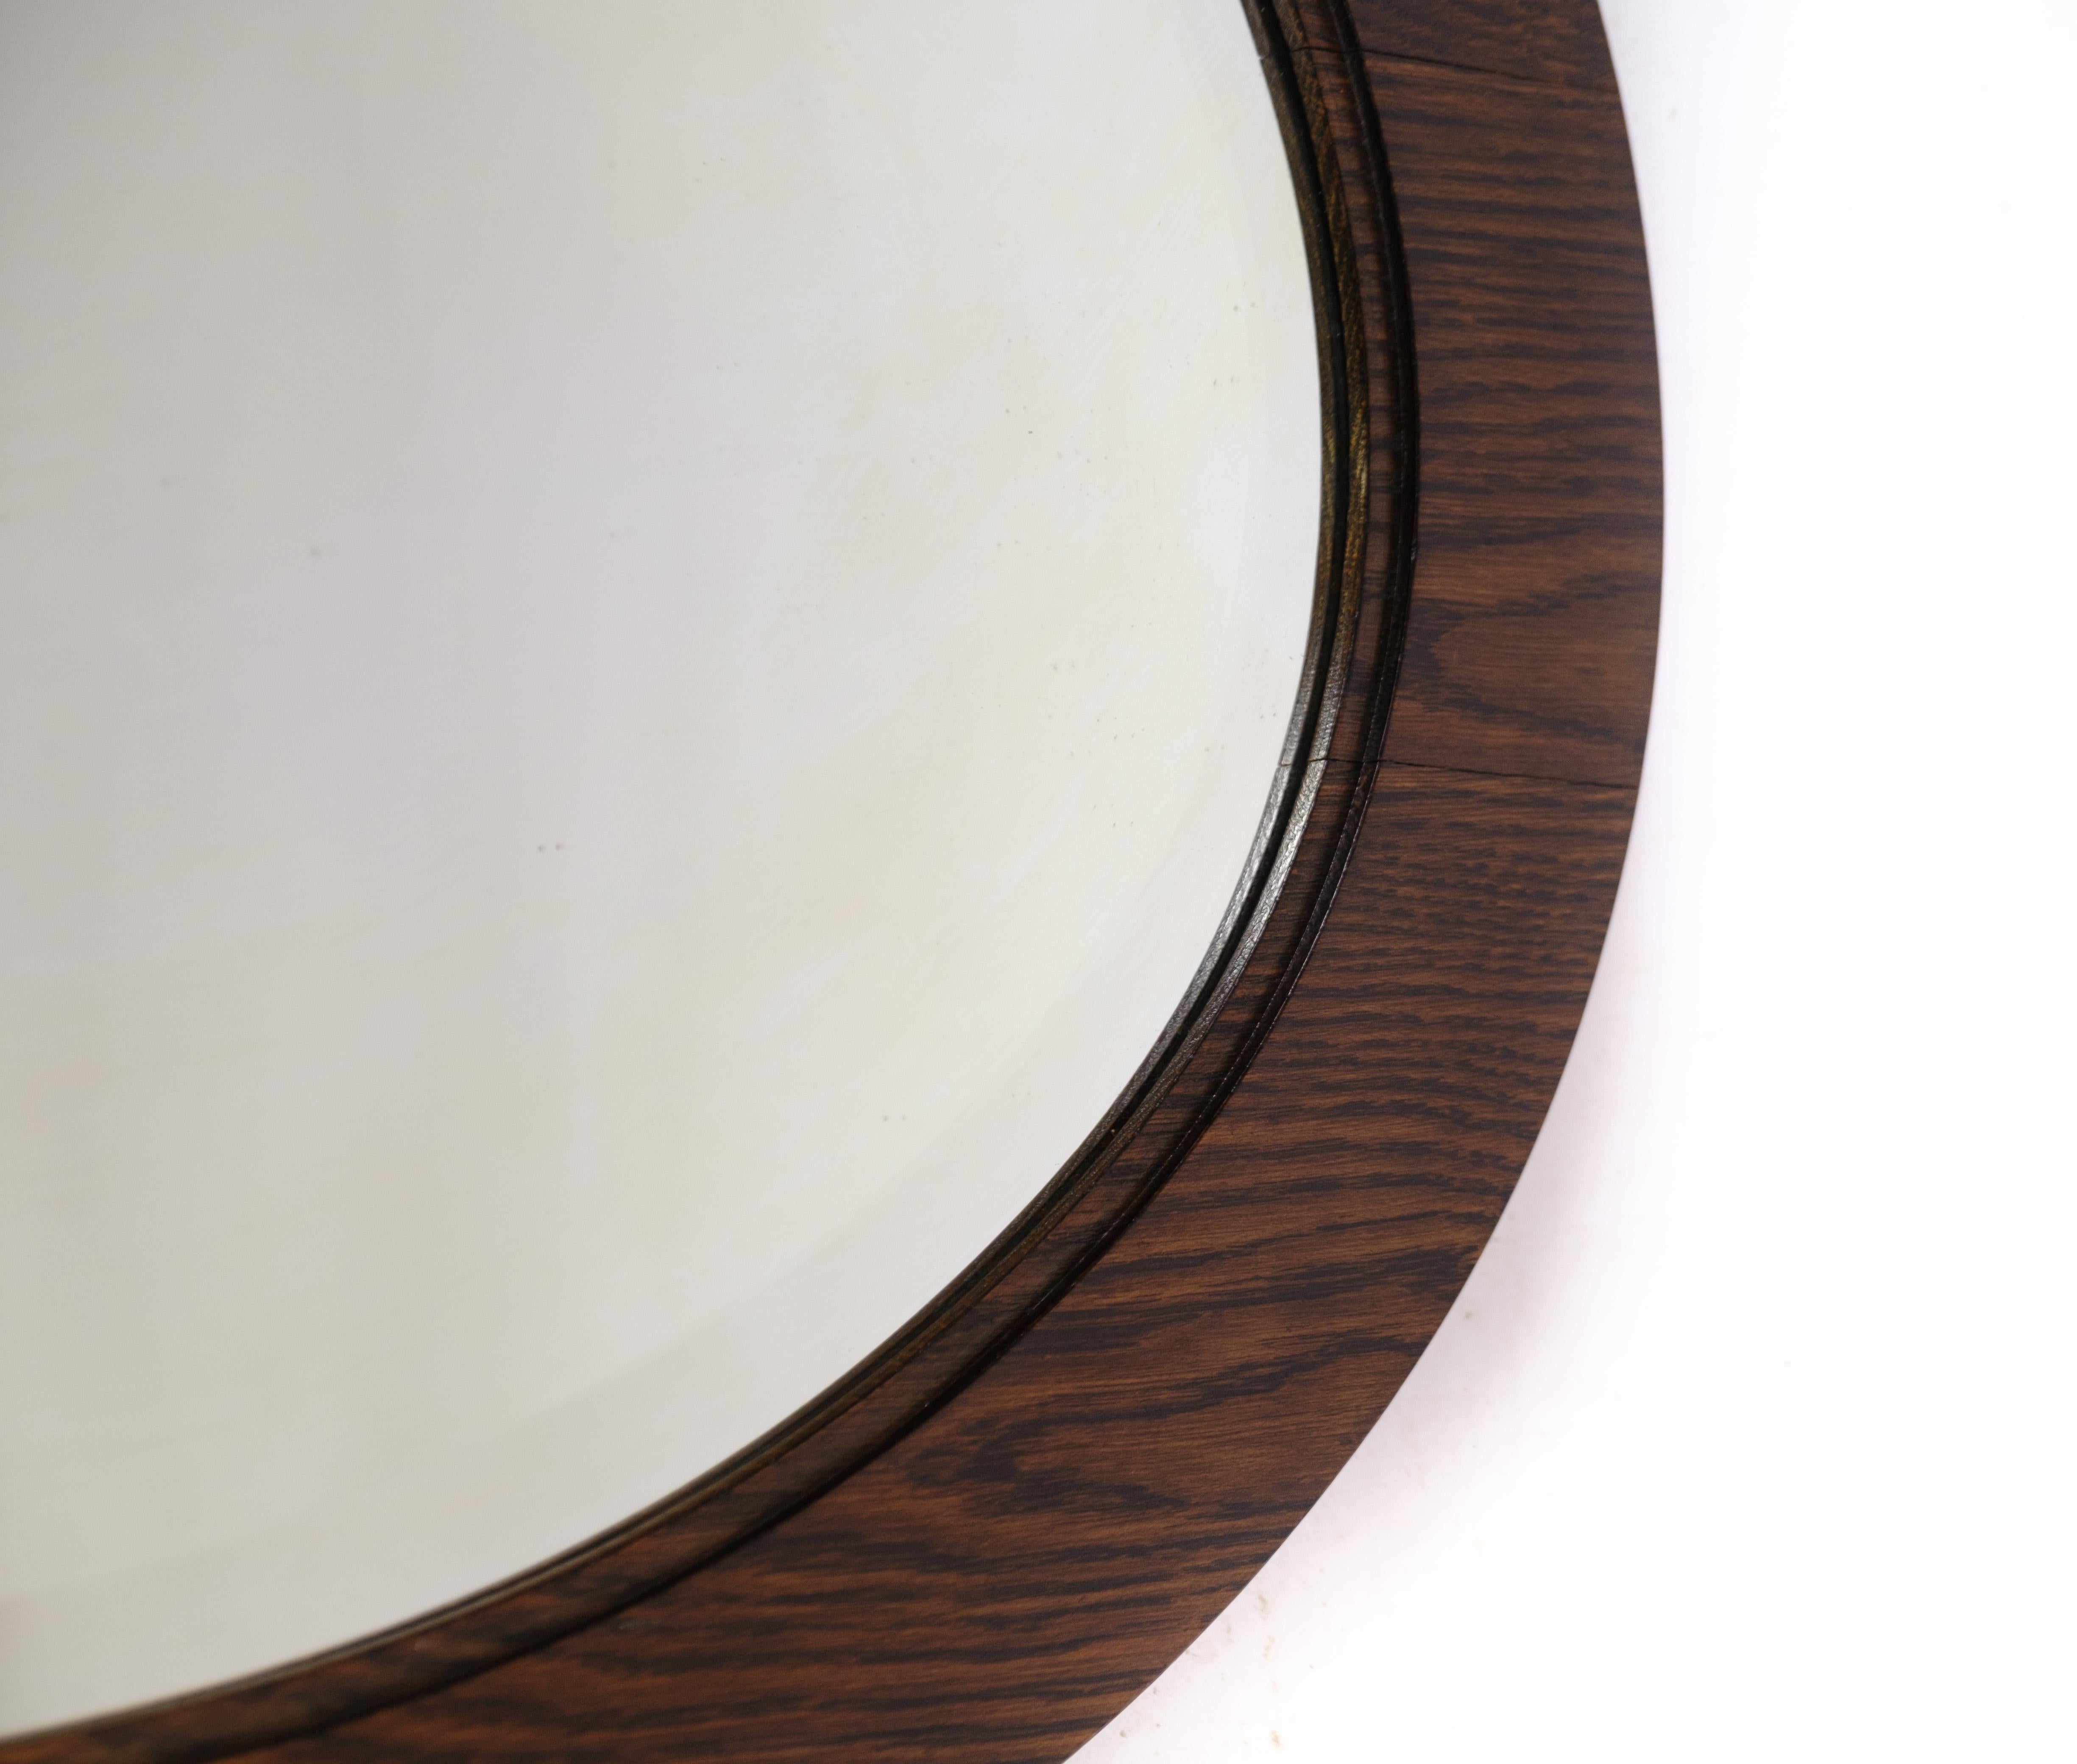 Miroir ovale ancien en chêne teinté foncé datant des années 1910 environ.
Dimensions en cm : H:74 L:103.